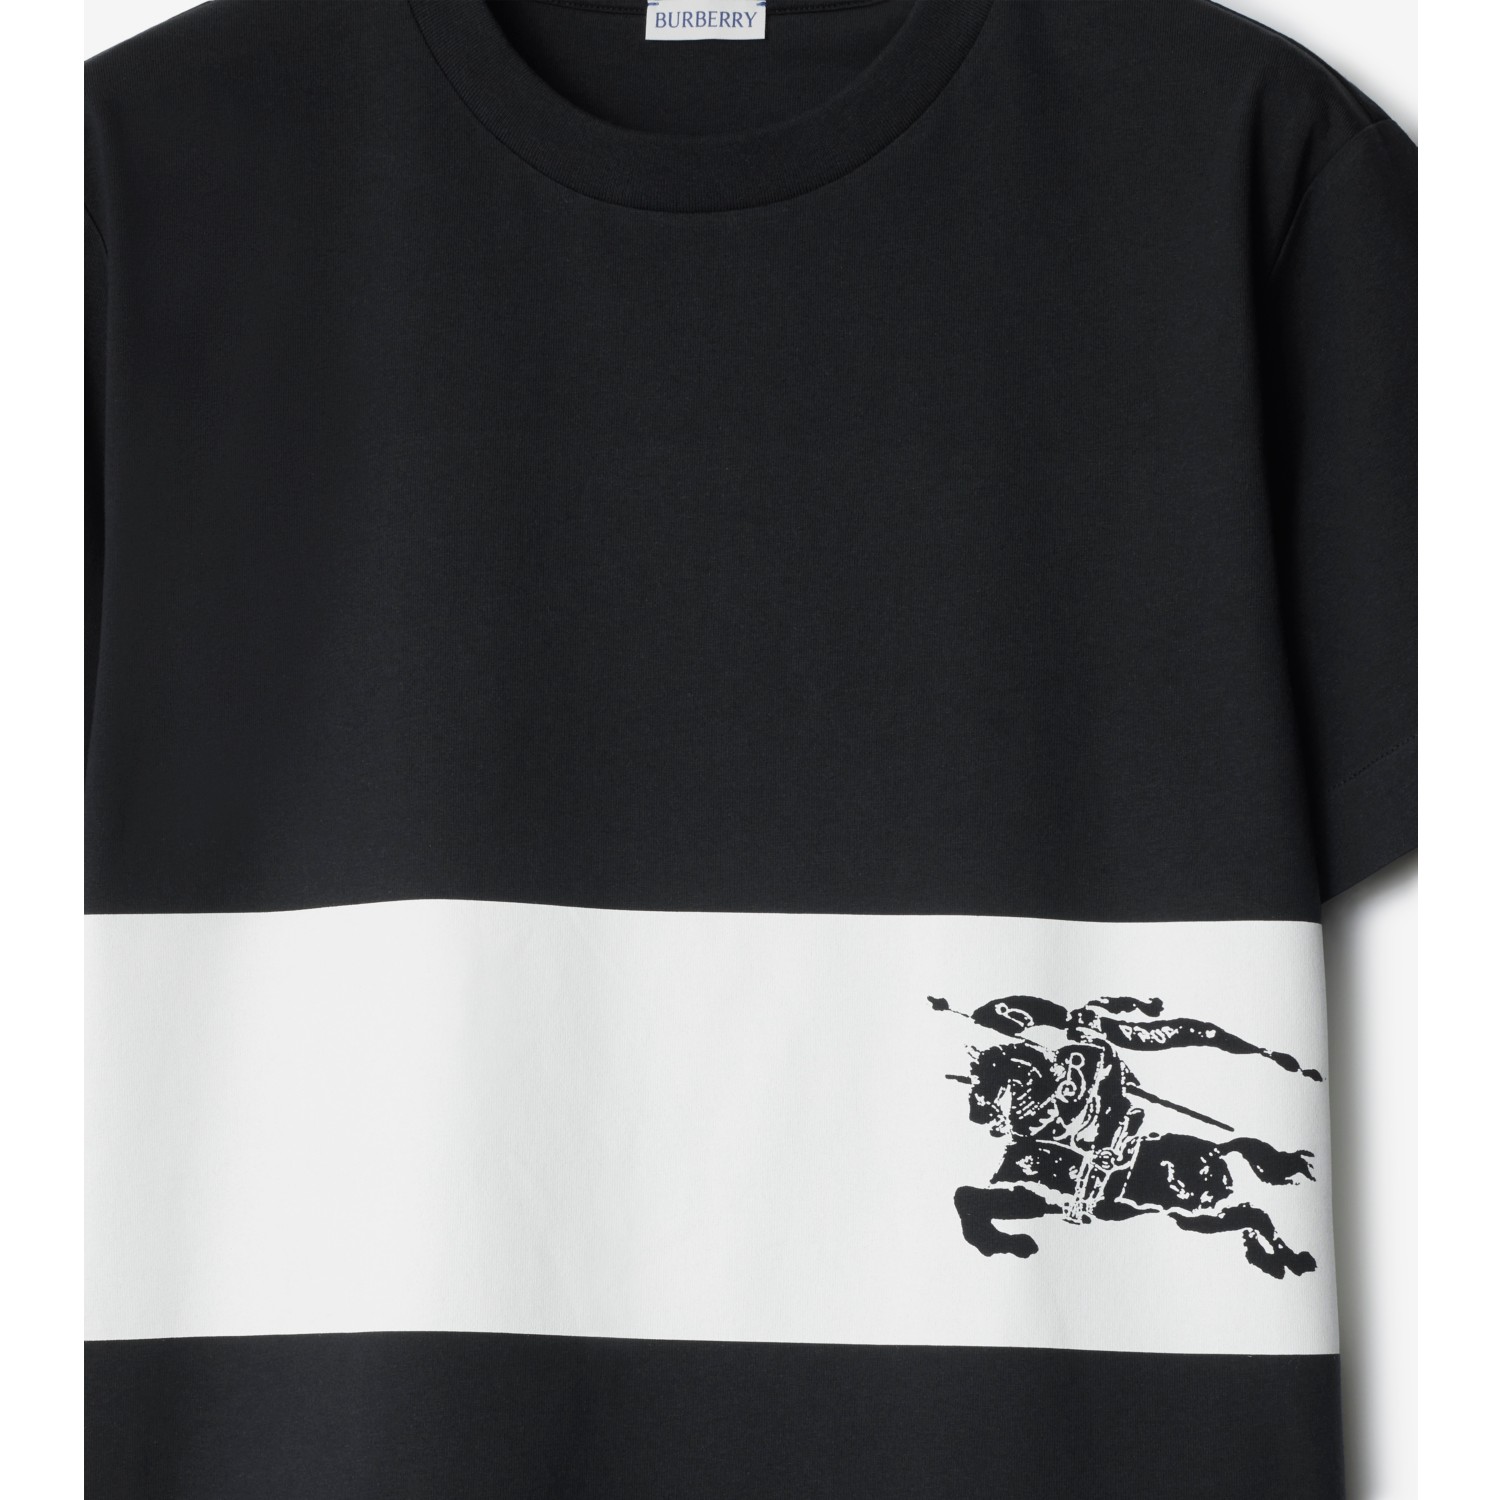 Baumwoll-T-Shirt mit Streifen und EKD-Motiv